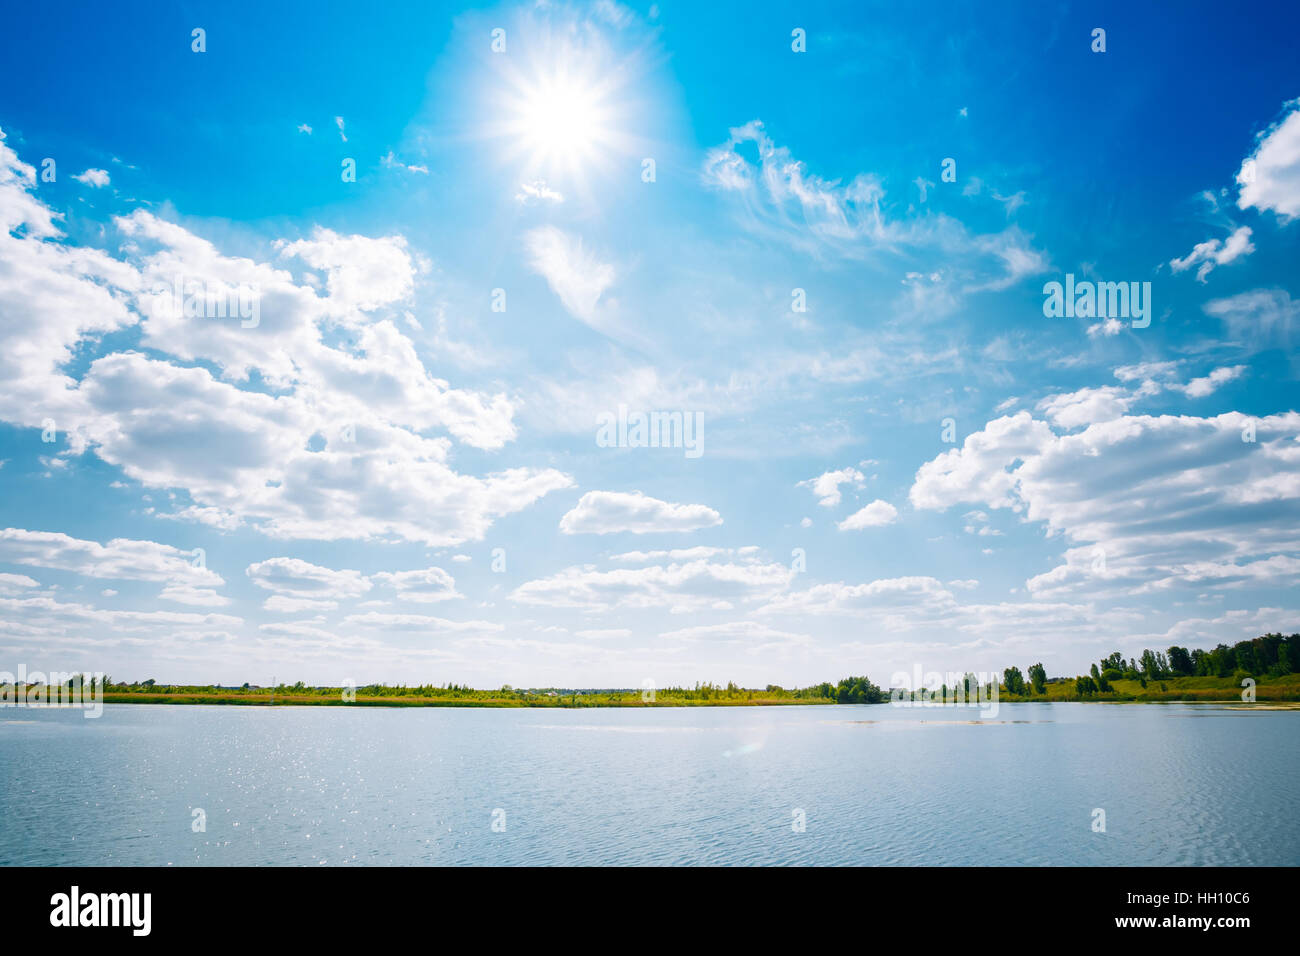 Riverine landschaftlich Skyline, Fluss See Wasserfläche, strahlend blauer Himmel mit weißen Wolken, die Sonne im Zenit. Exemplar Hintergrund. Stockfoto